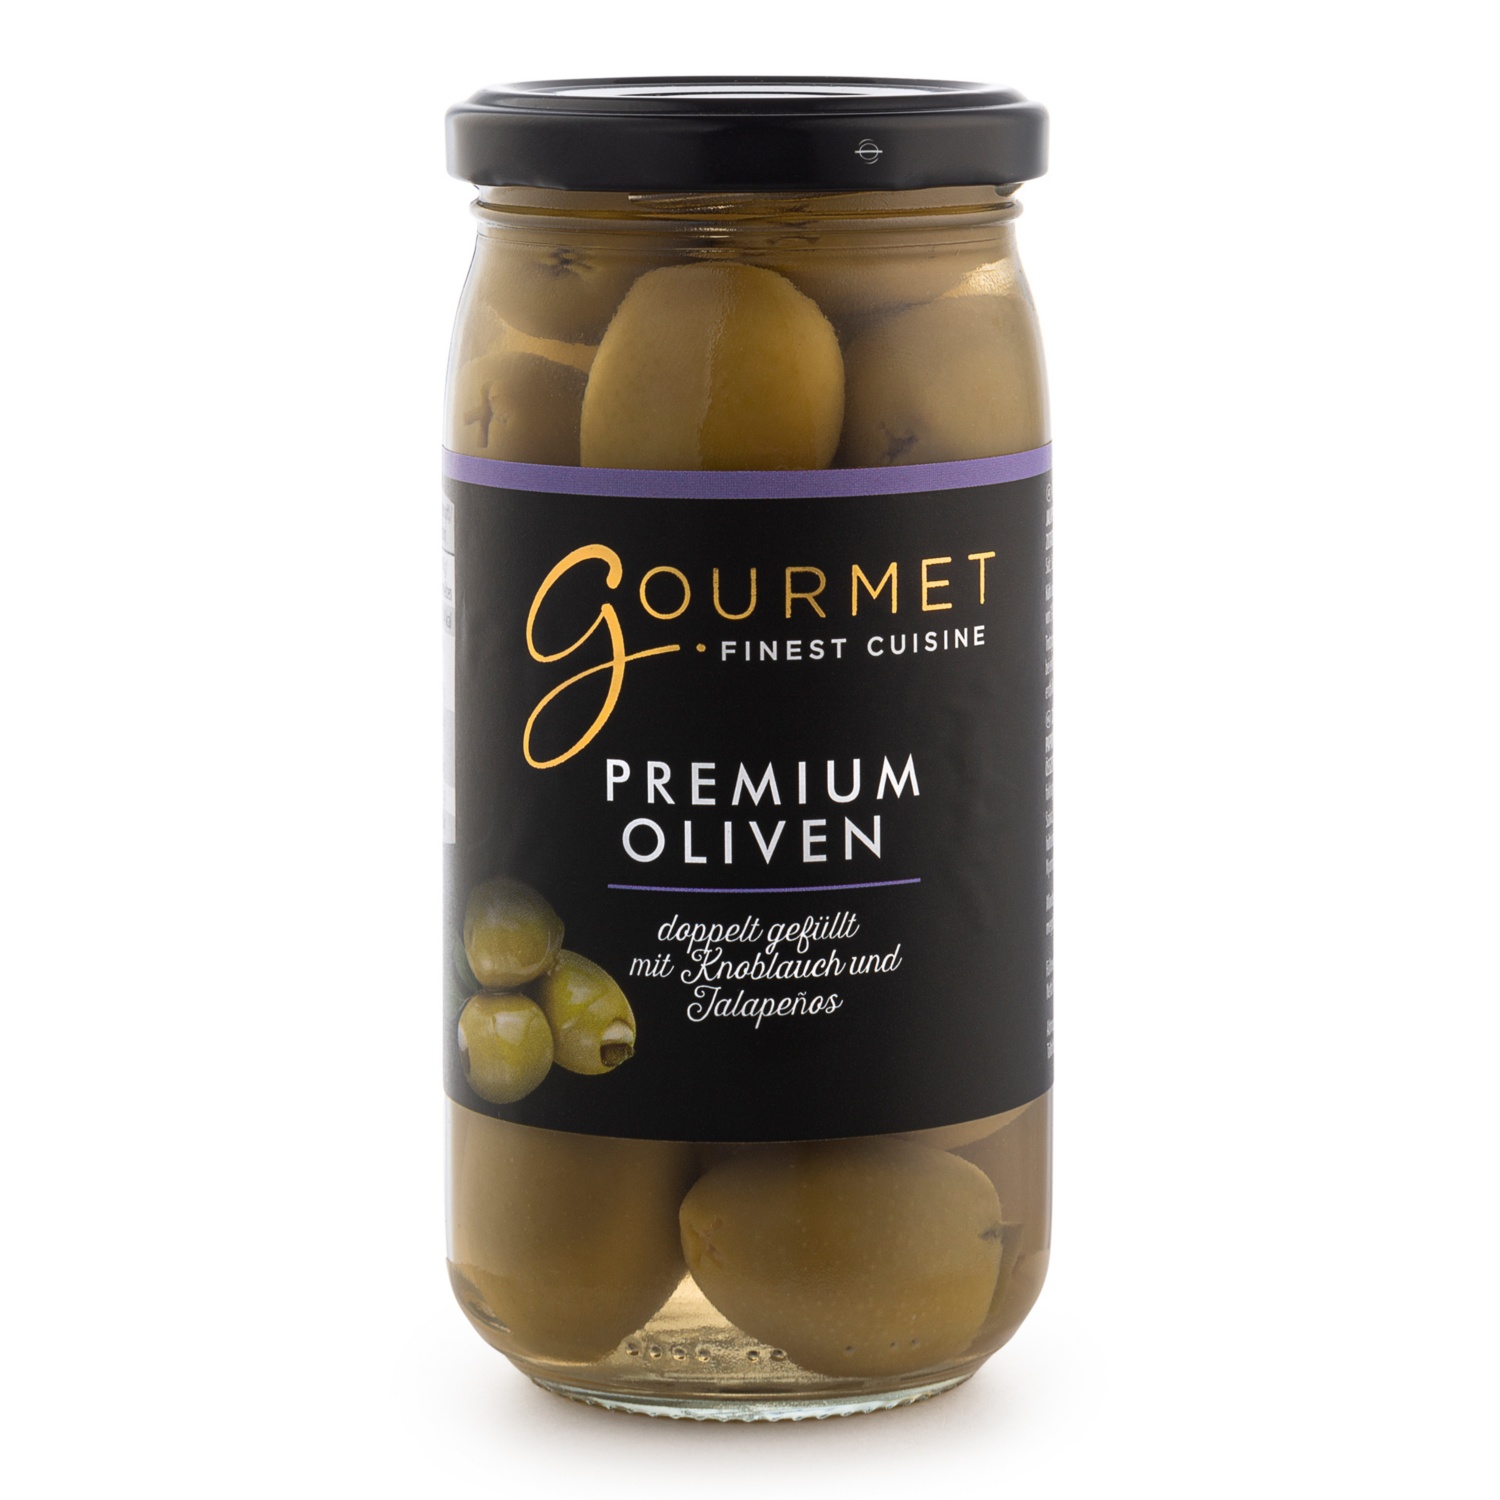 GOURMET Griechische Oliven, doppelt gefüllt, Knoblauch-Jalapeno